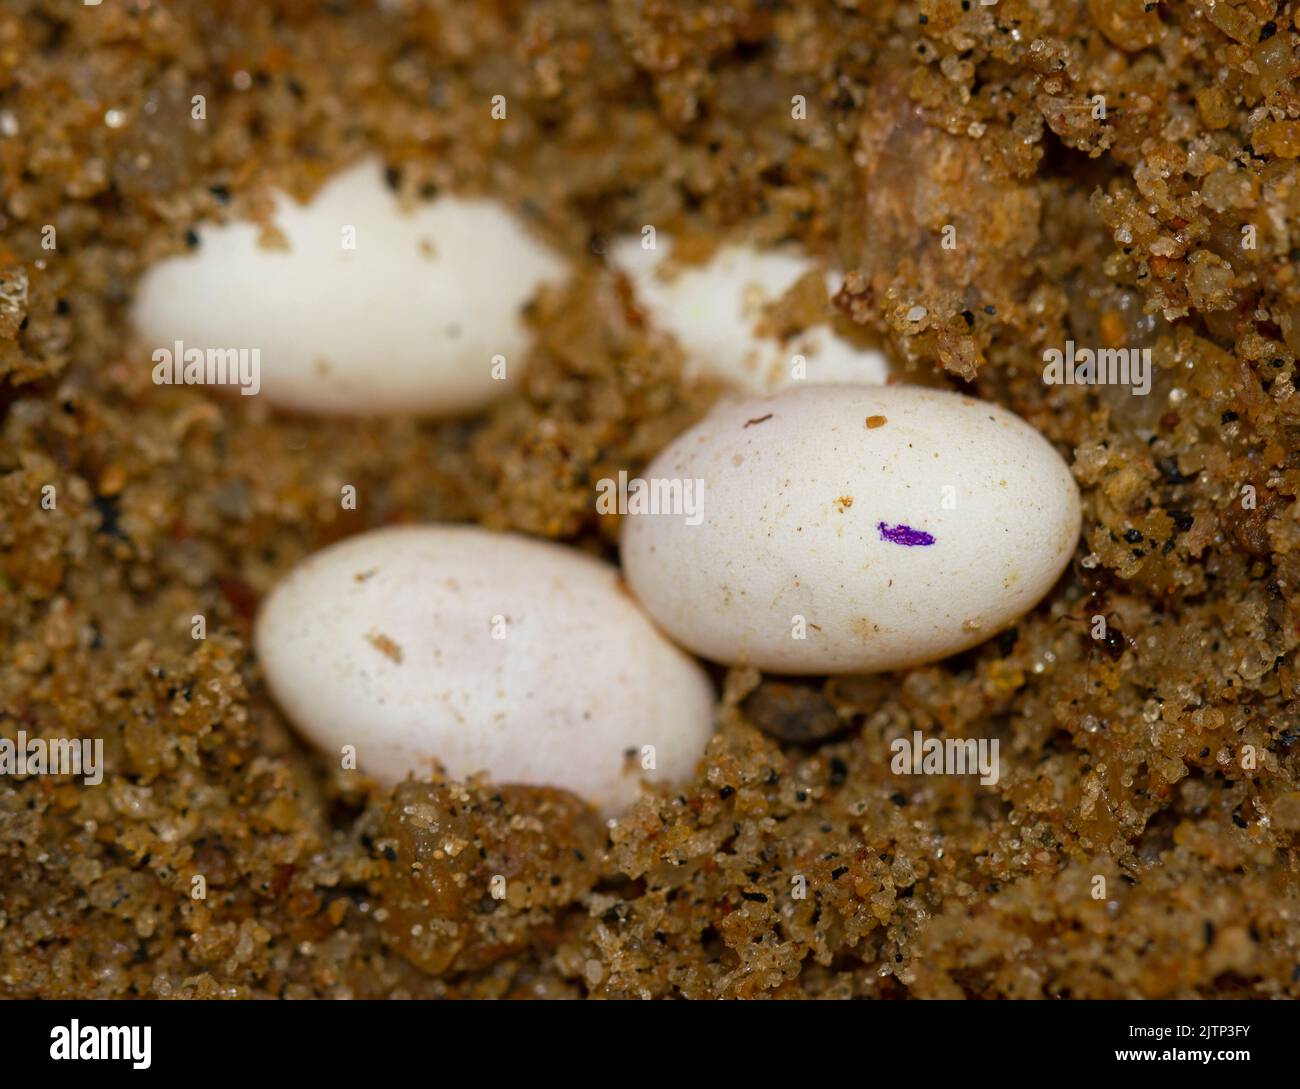 Eier auf dem Boden; Eidechseneier; Eidechseneier; Eier von Calotes versicolor aus Sri Lanka; gewöhnliche Garteneidechse; Reptilieneier Stockfoto